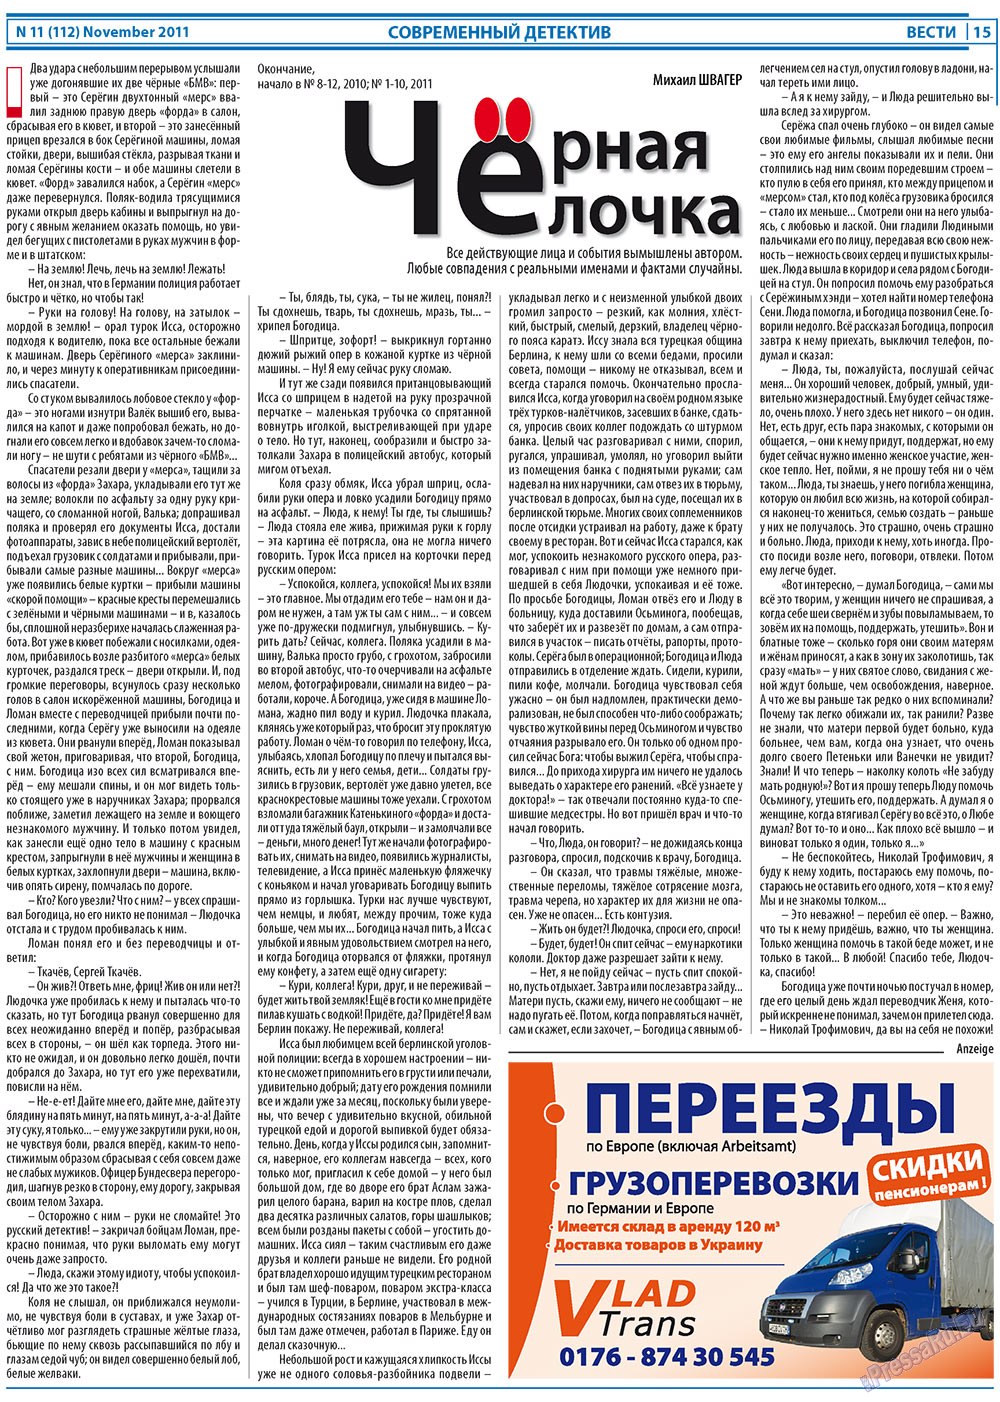 Вести, газета. 2011 №11 стр.15